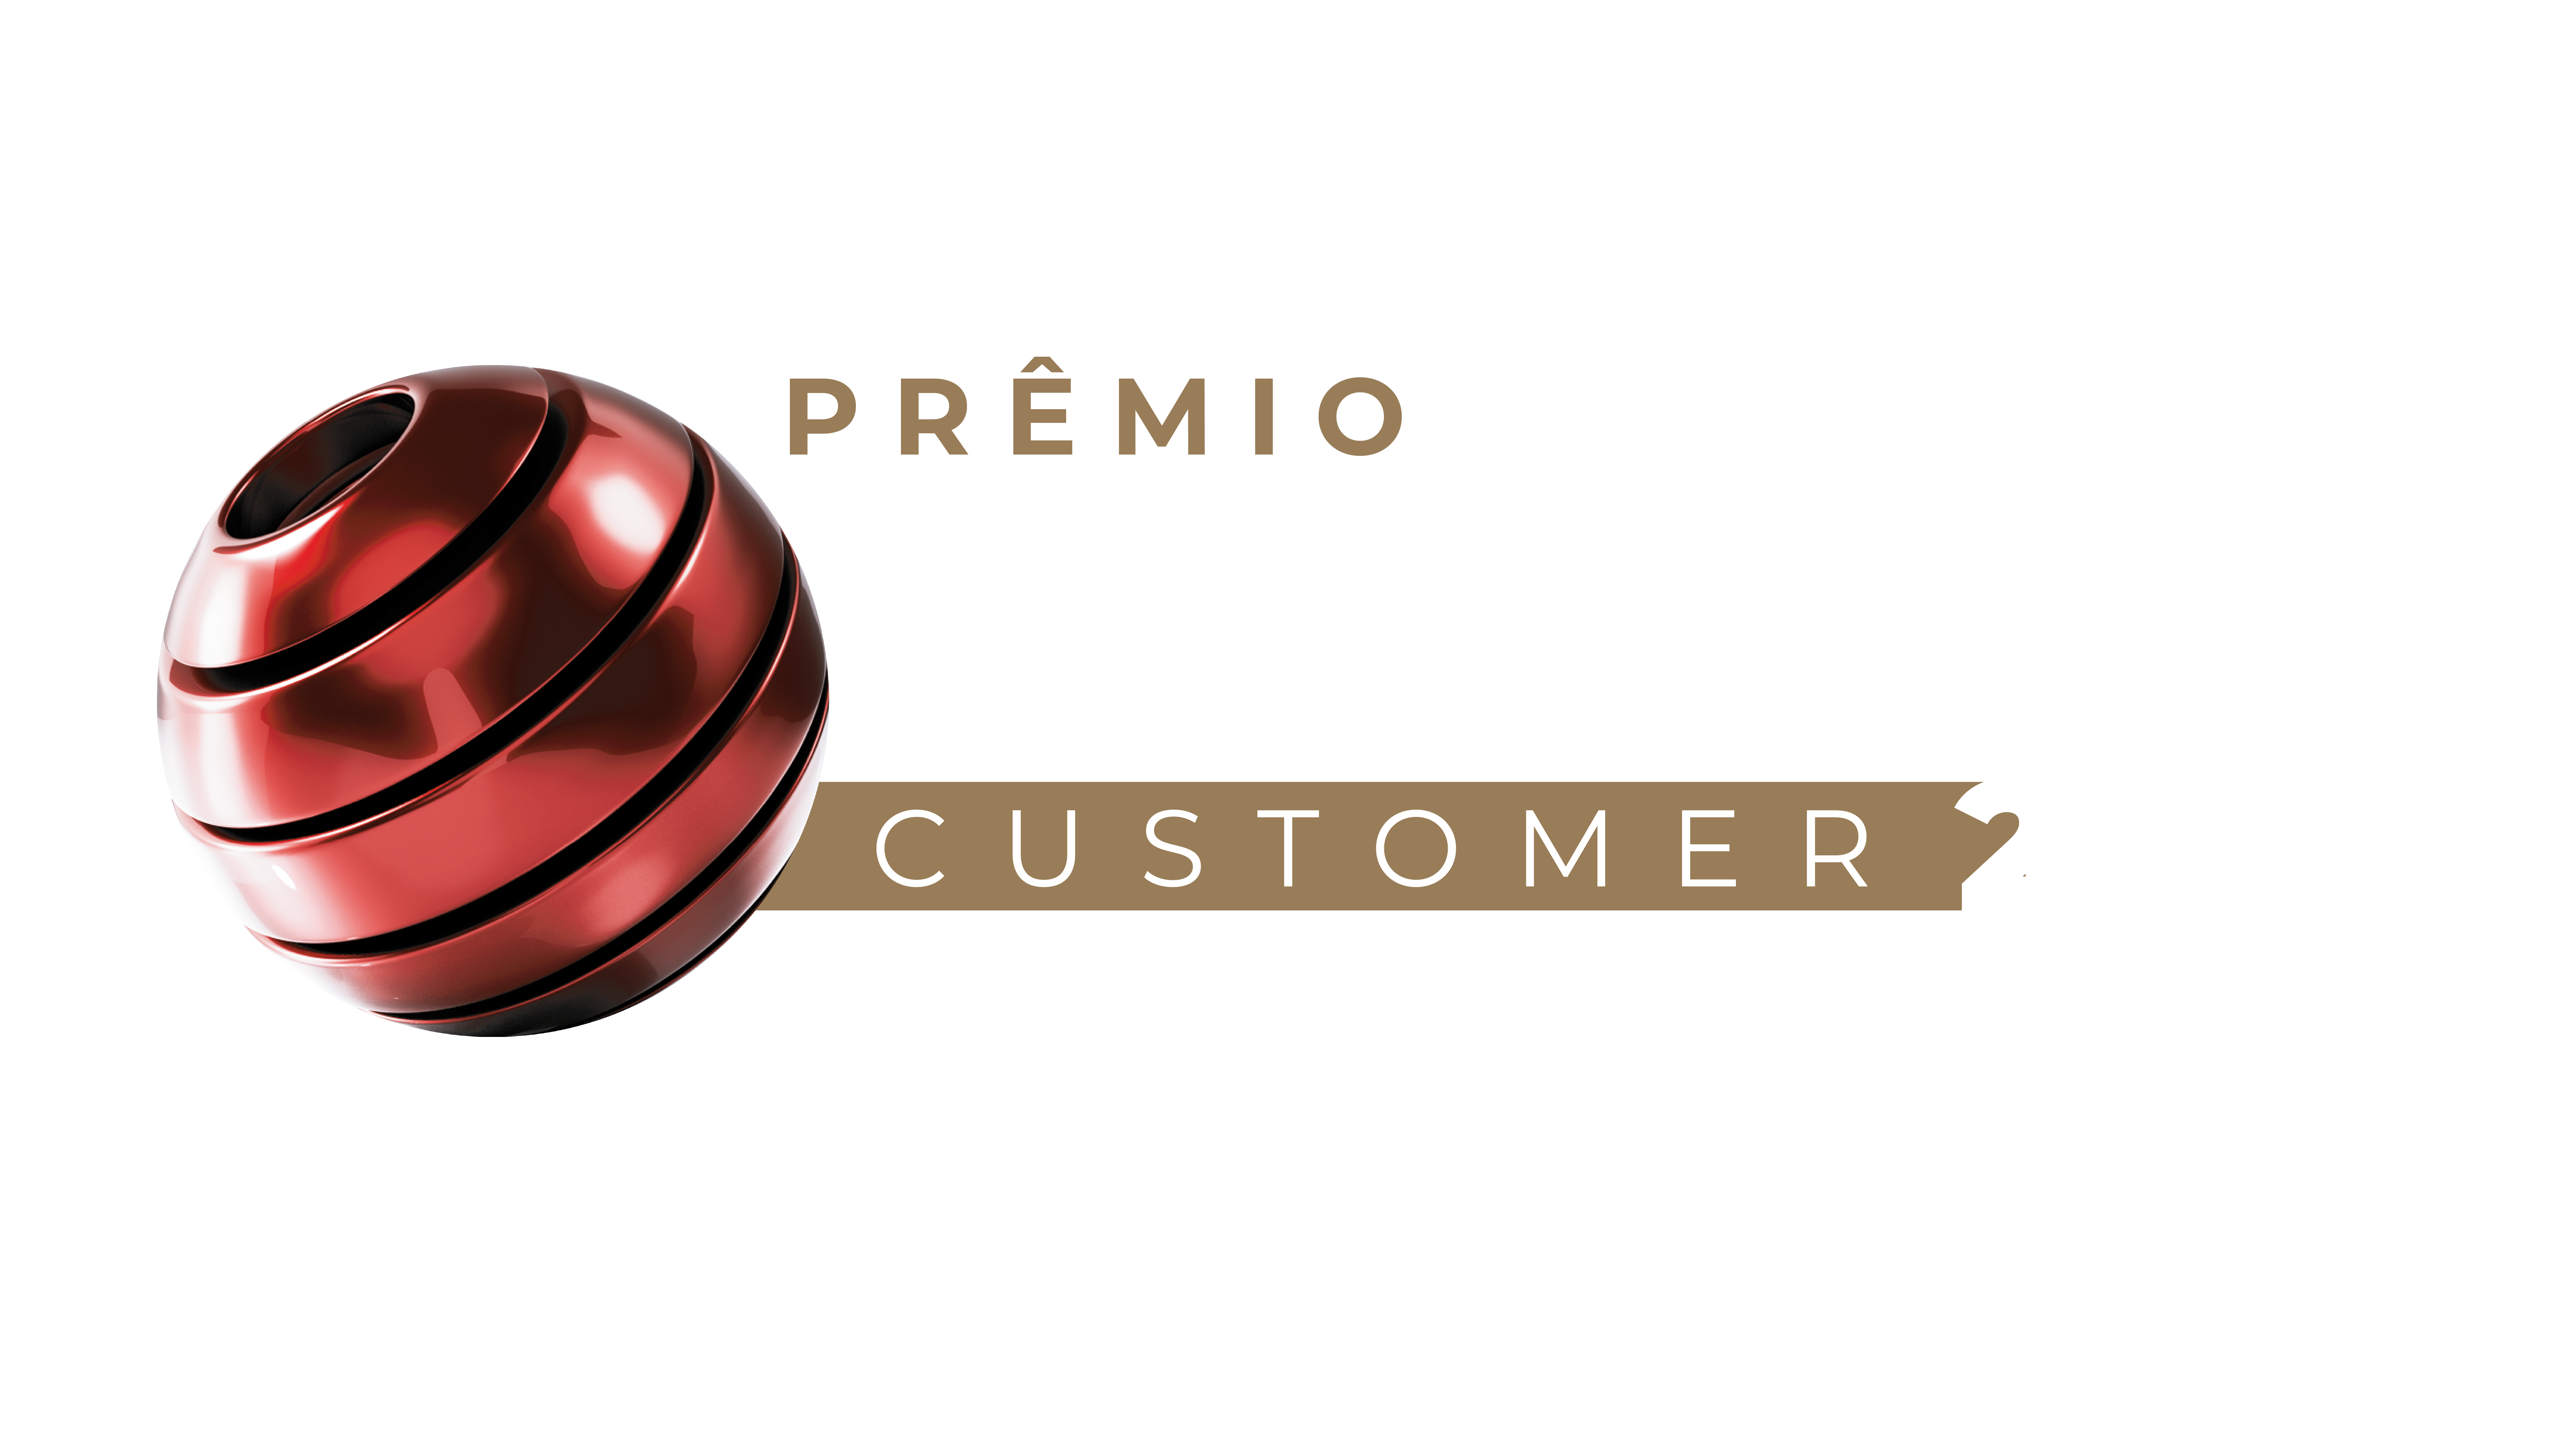 Outra premiação, mais um destaque. AeC conquista 4 prêmios no SMART  Customer 2020. - AeC